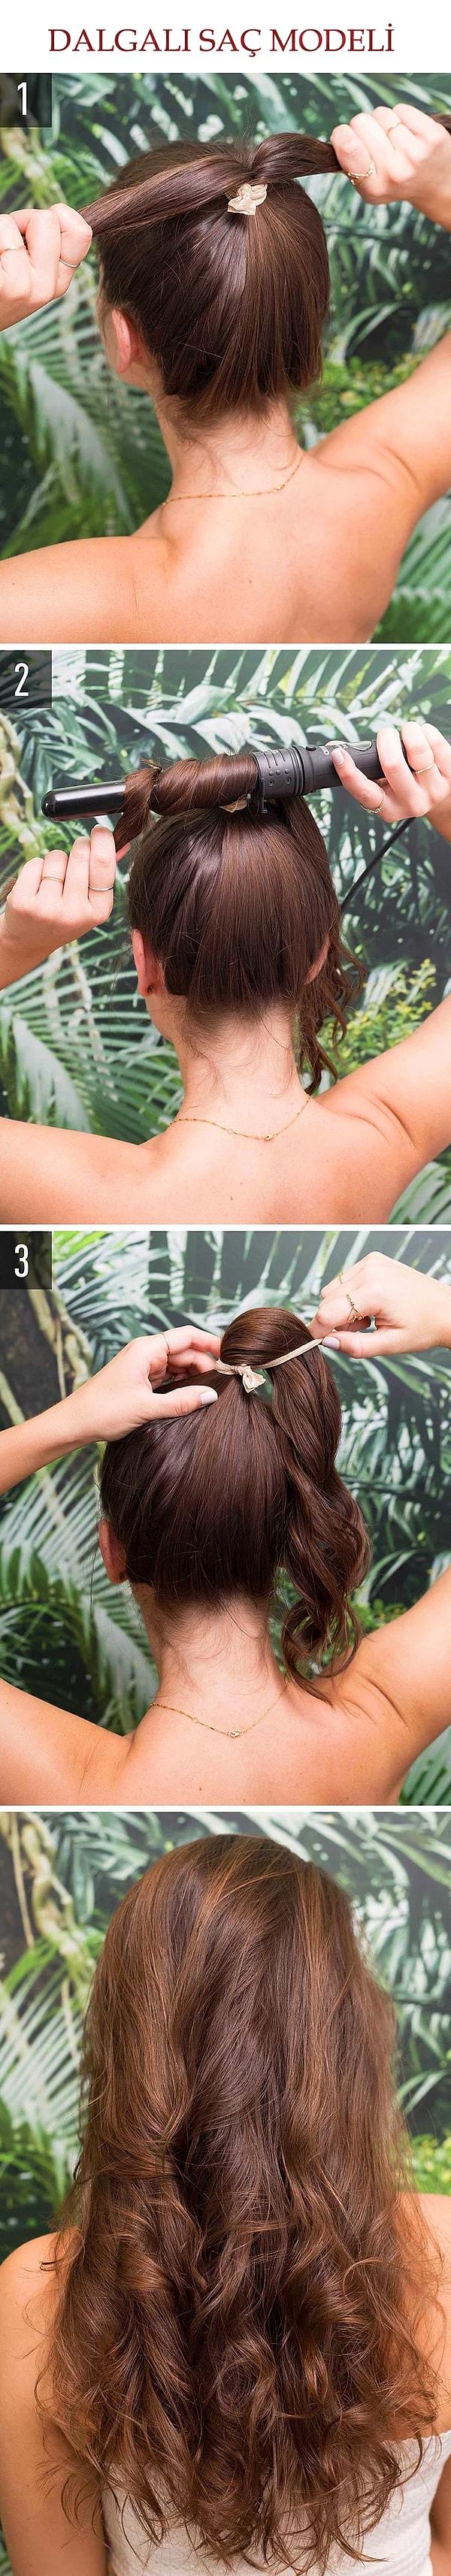 4. Saçlarınıza doğal dalgalar yapmanın en kısa yolu!